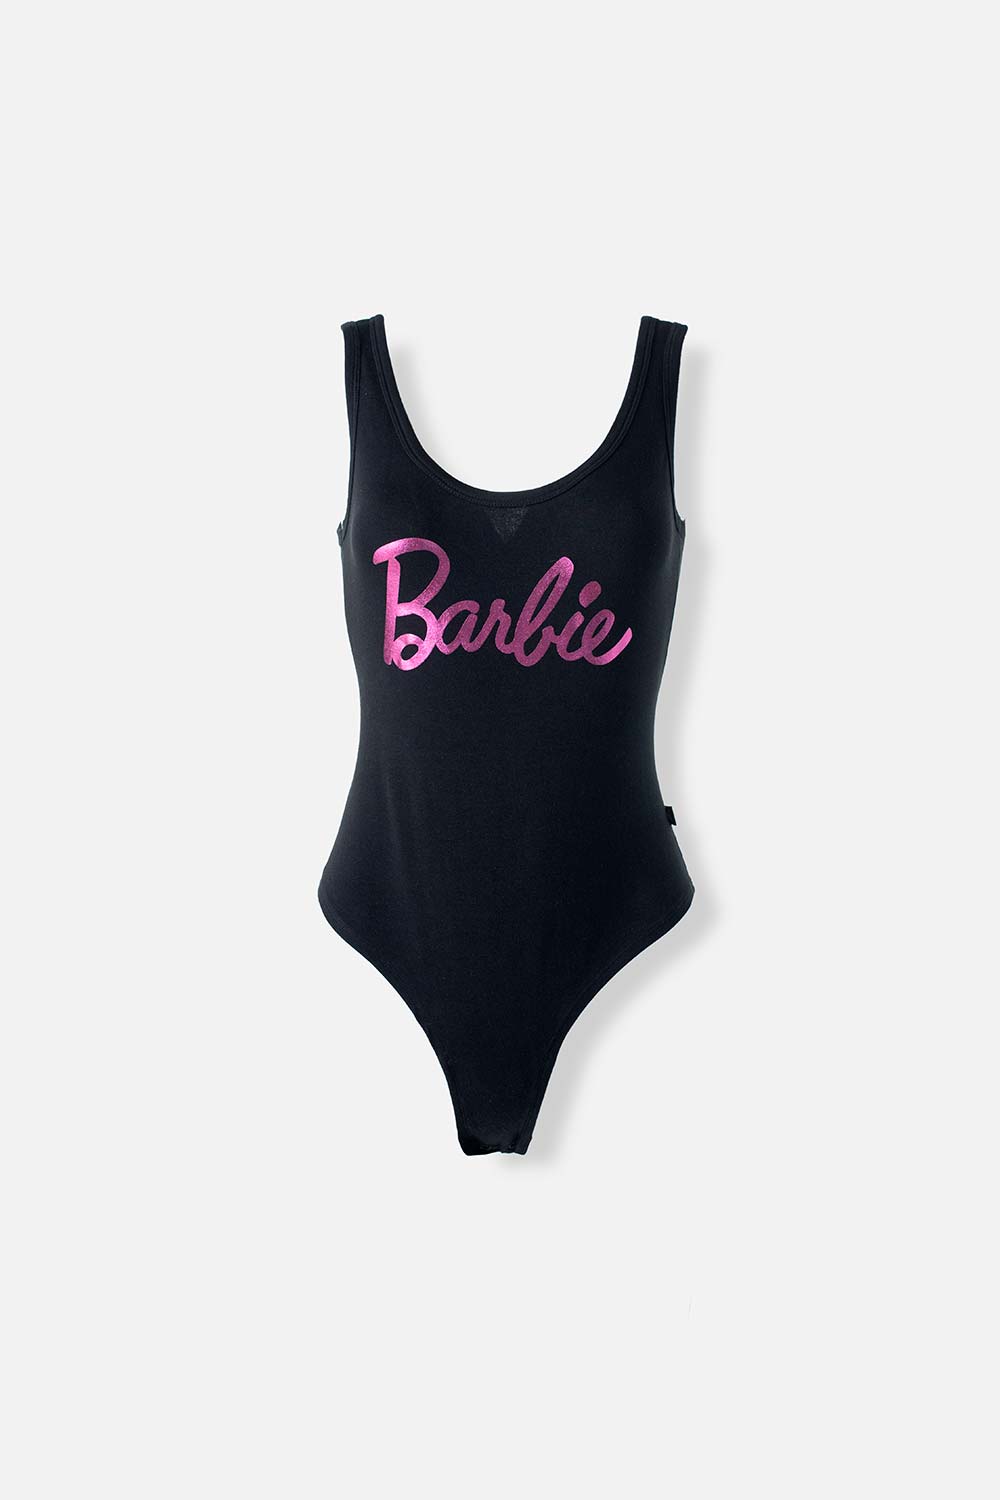 Body de Barbie negro para mujer - MoviesShop